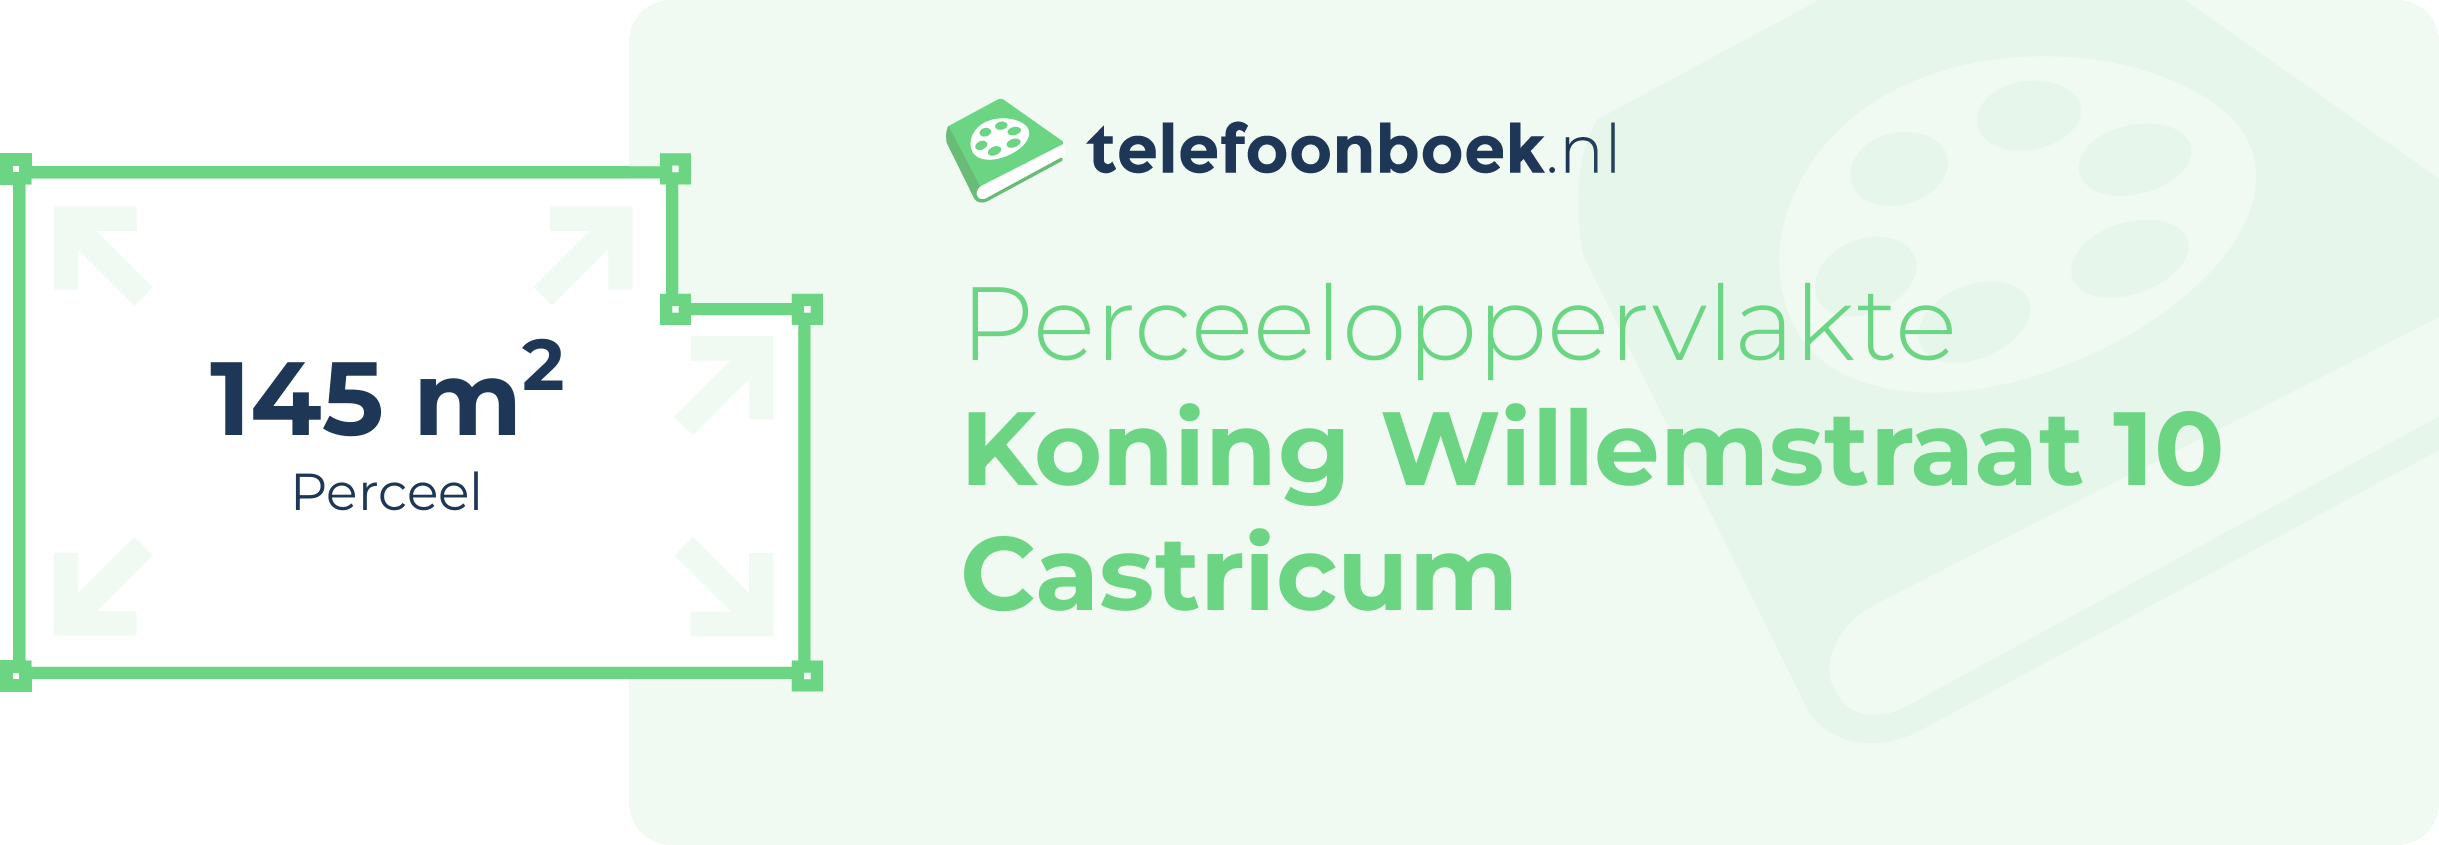 Perceeloppervlakte Koning Willemstraat 10 Castricum